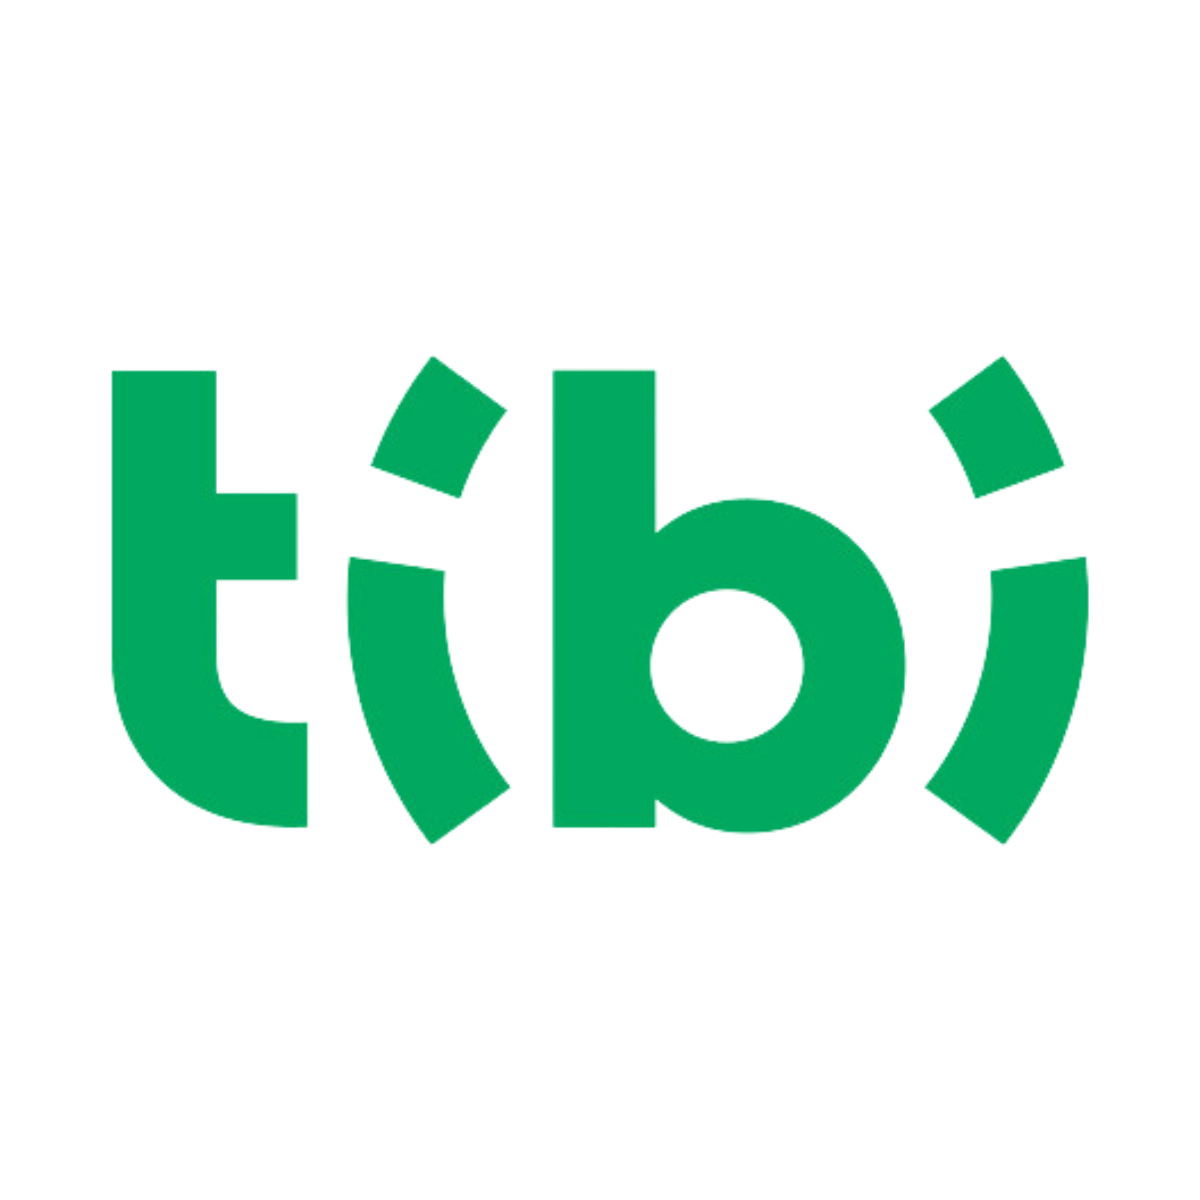 TIBI.png (129 KB)